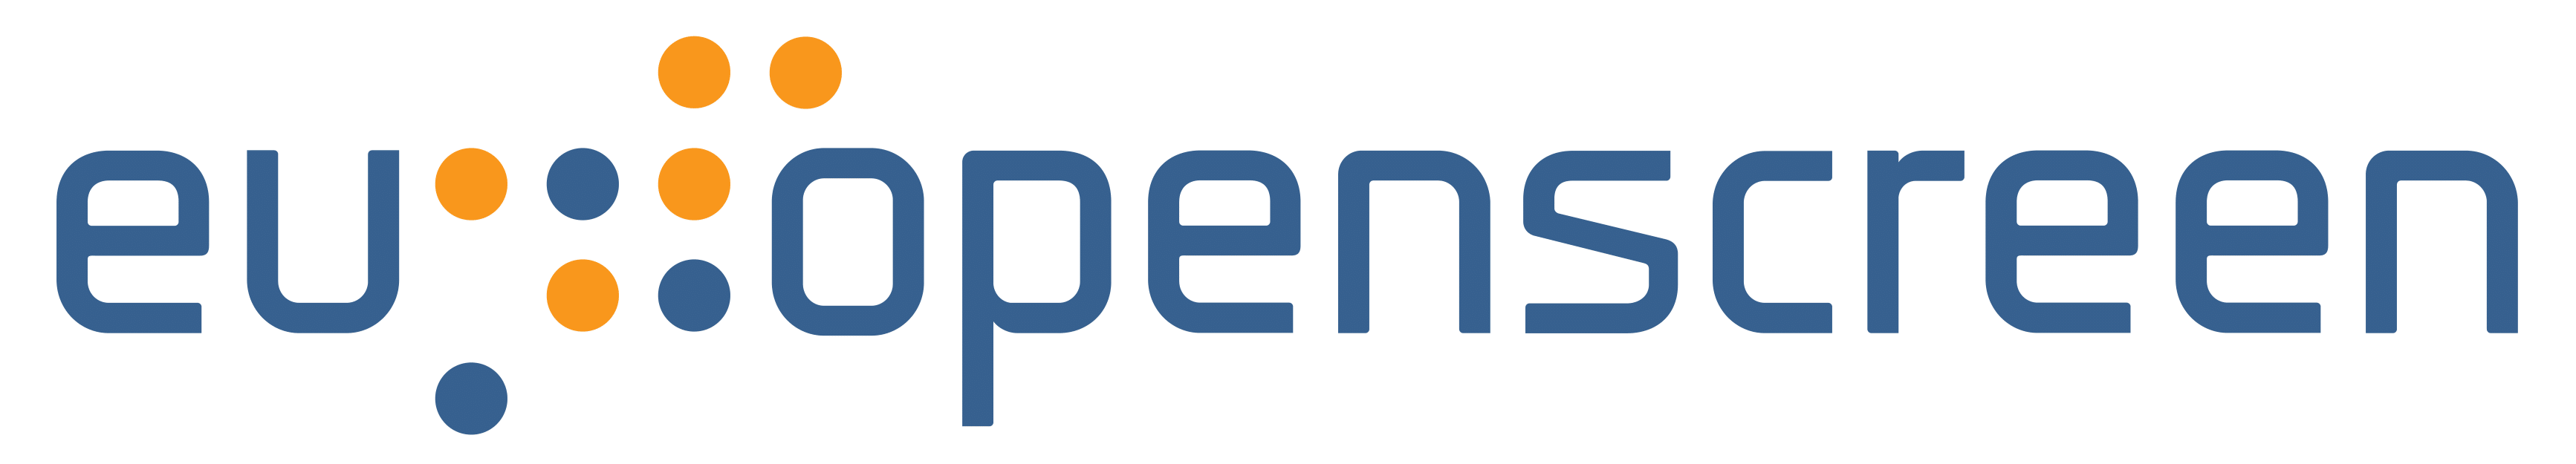 EU OPENSCREEN logo